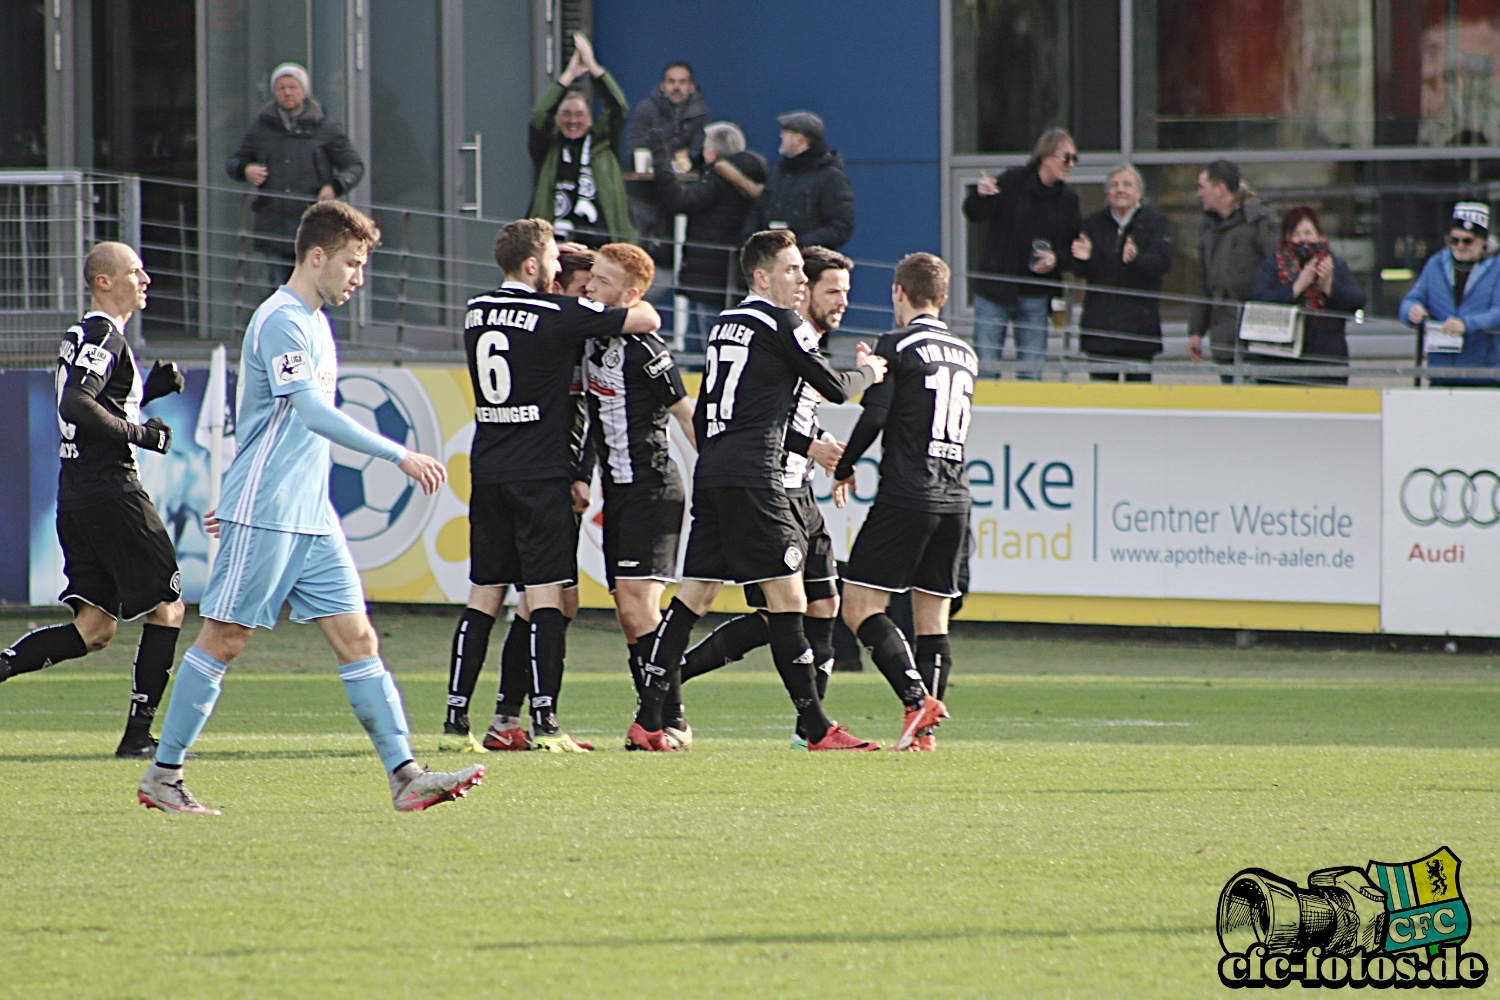 VfR Aalen - Chemnitzer FC 3:2 (1:1)